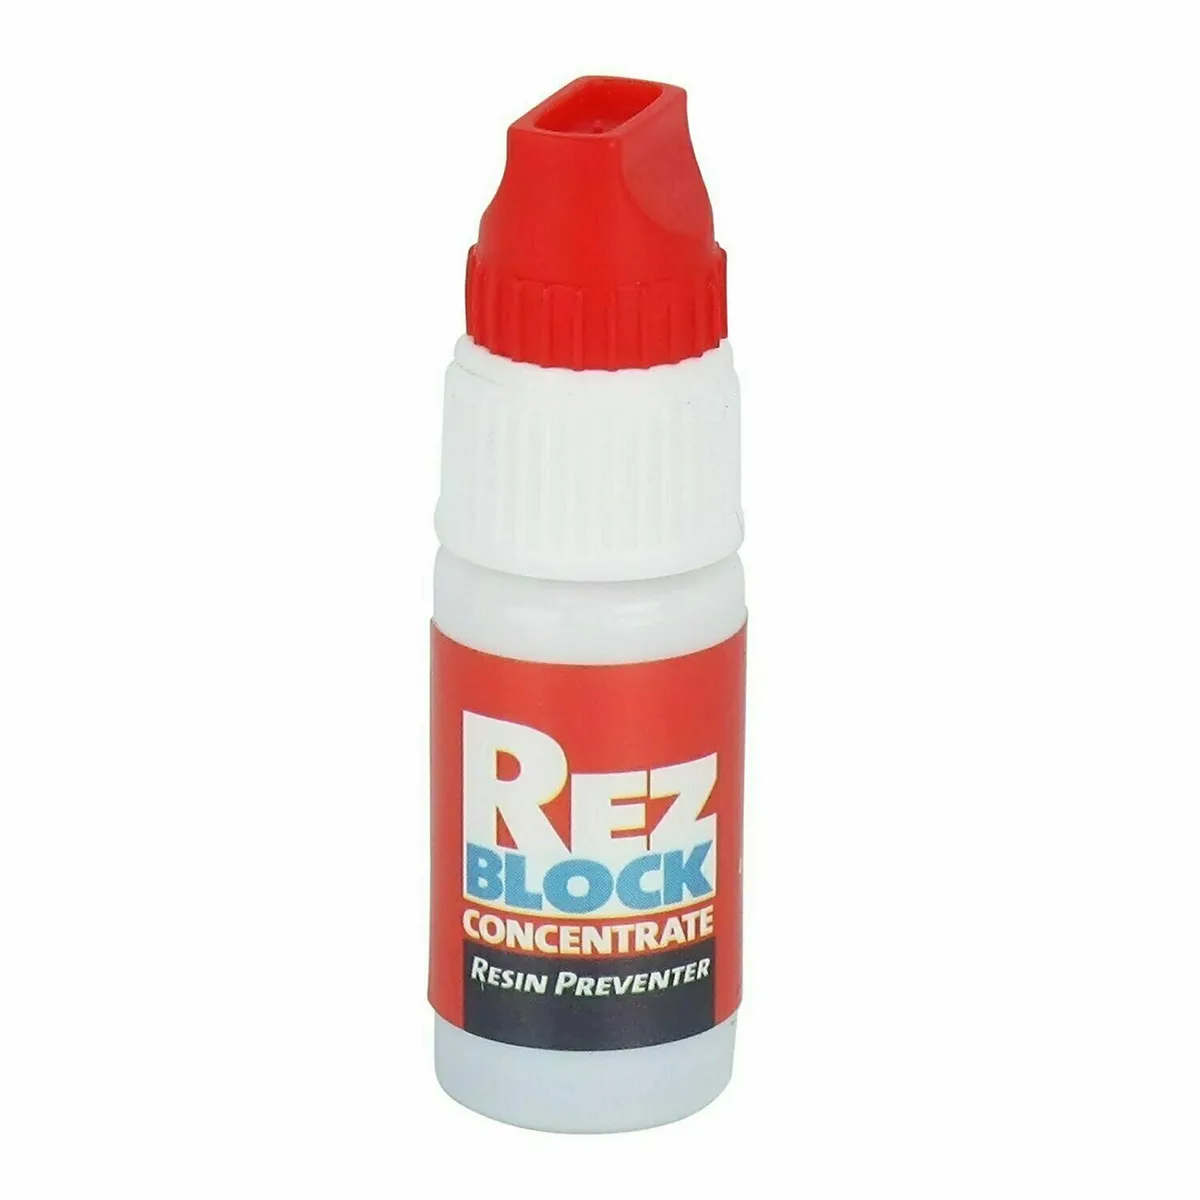 RezBlock Concentrate Resin Preventer Mini